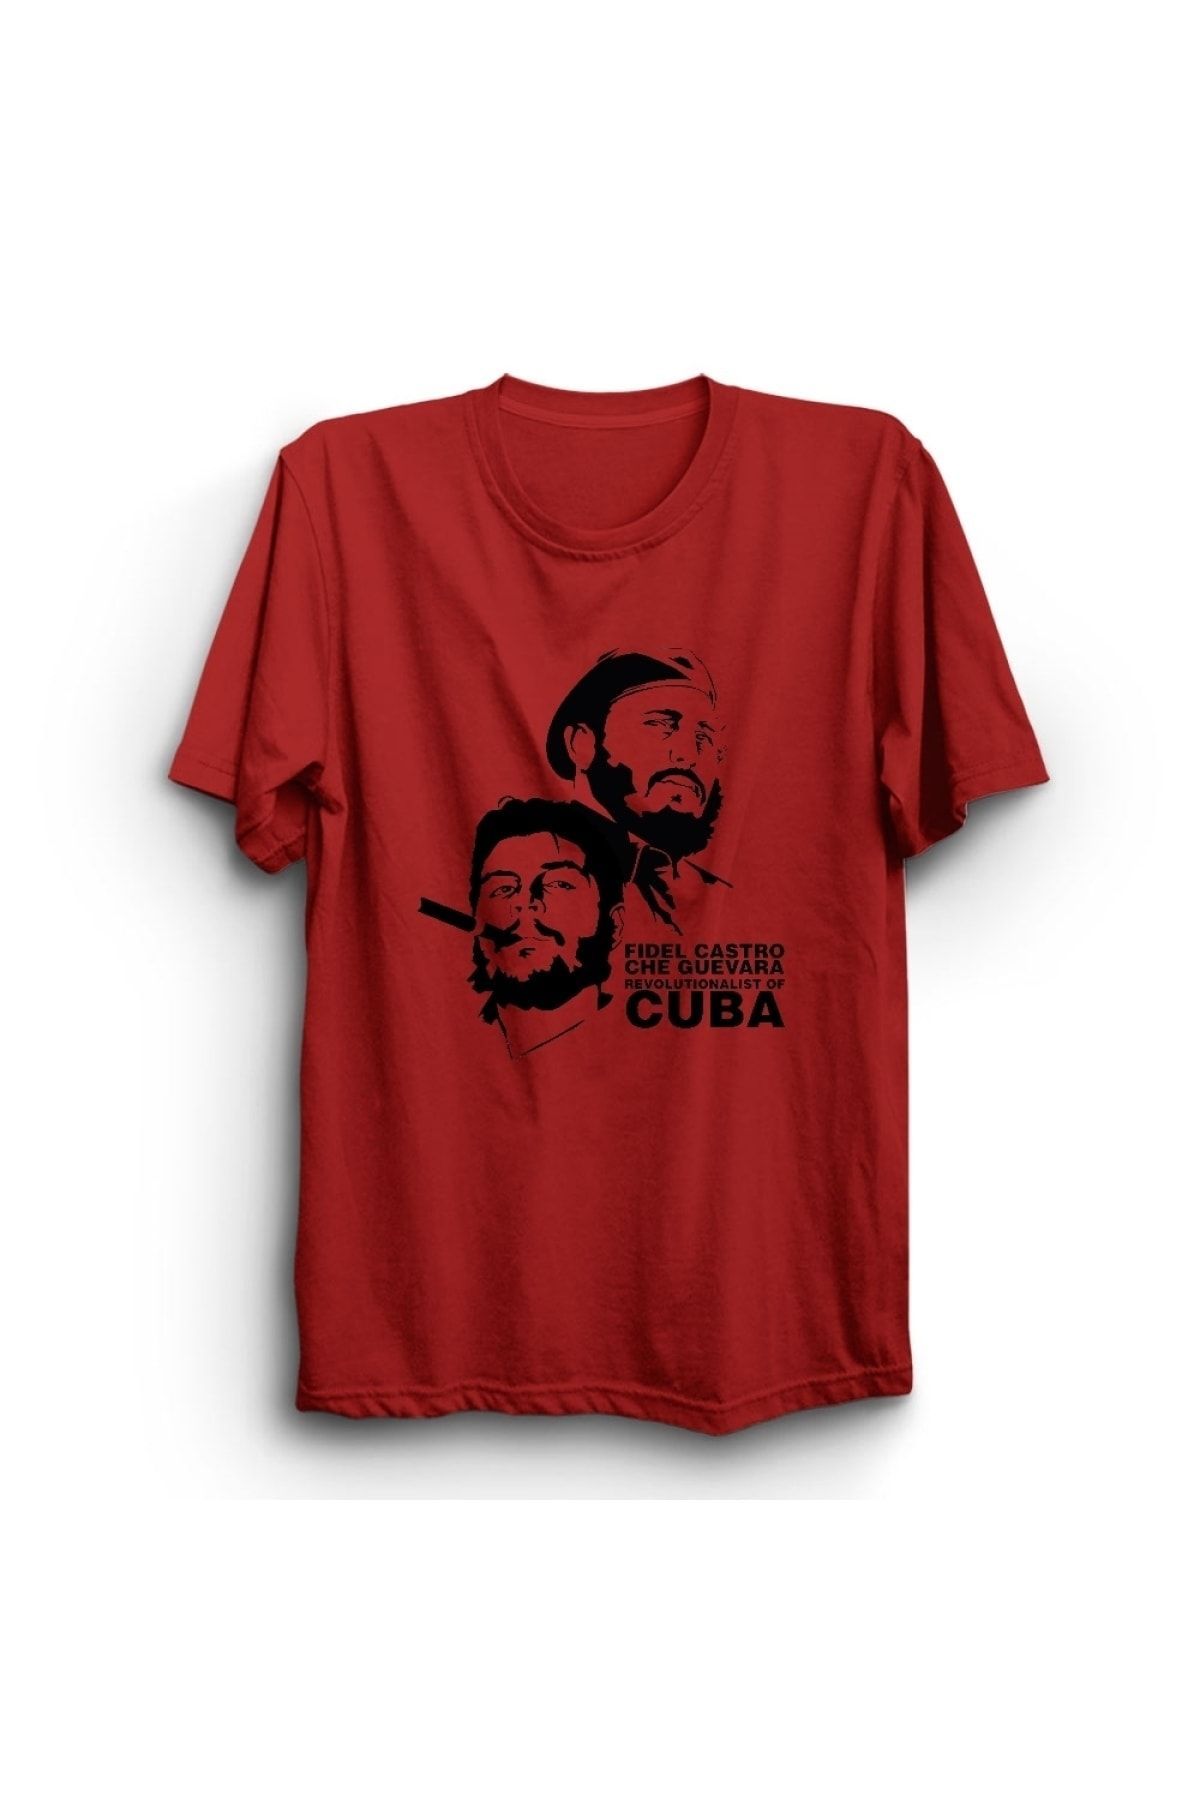 The Fame Che Guevara, Fidel Castro, Revolutionalist Of Cuba, Küba Tişört